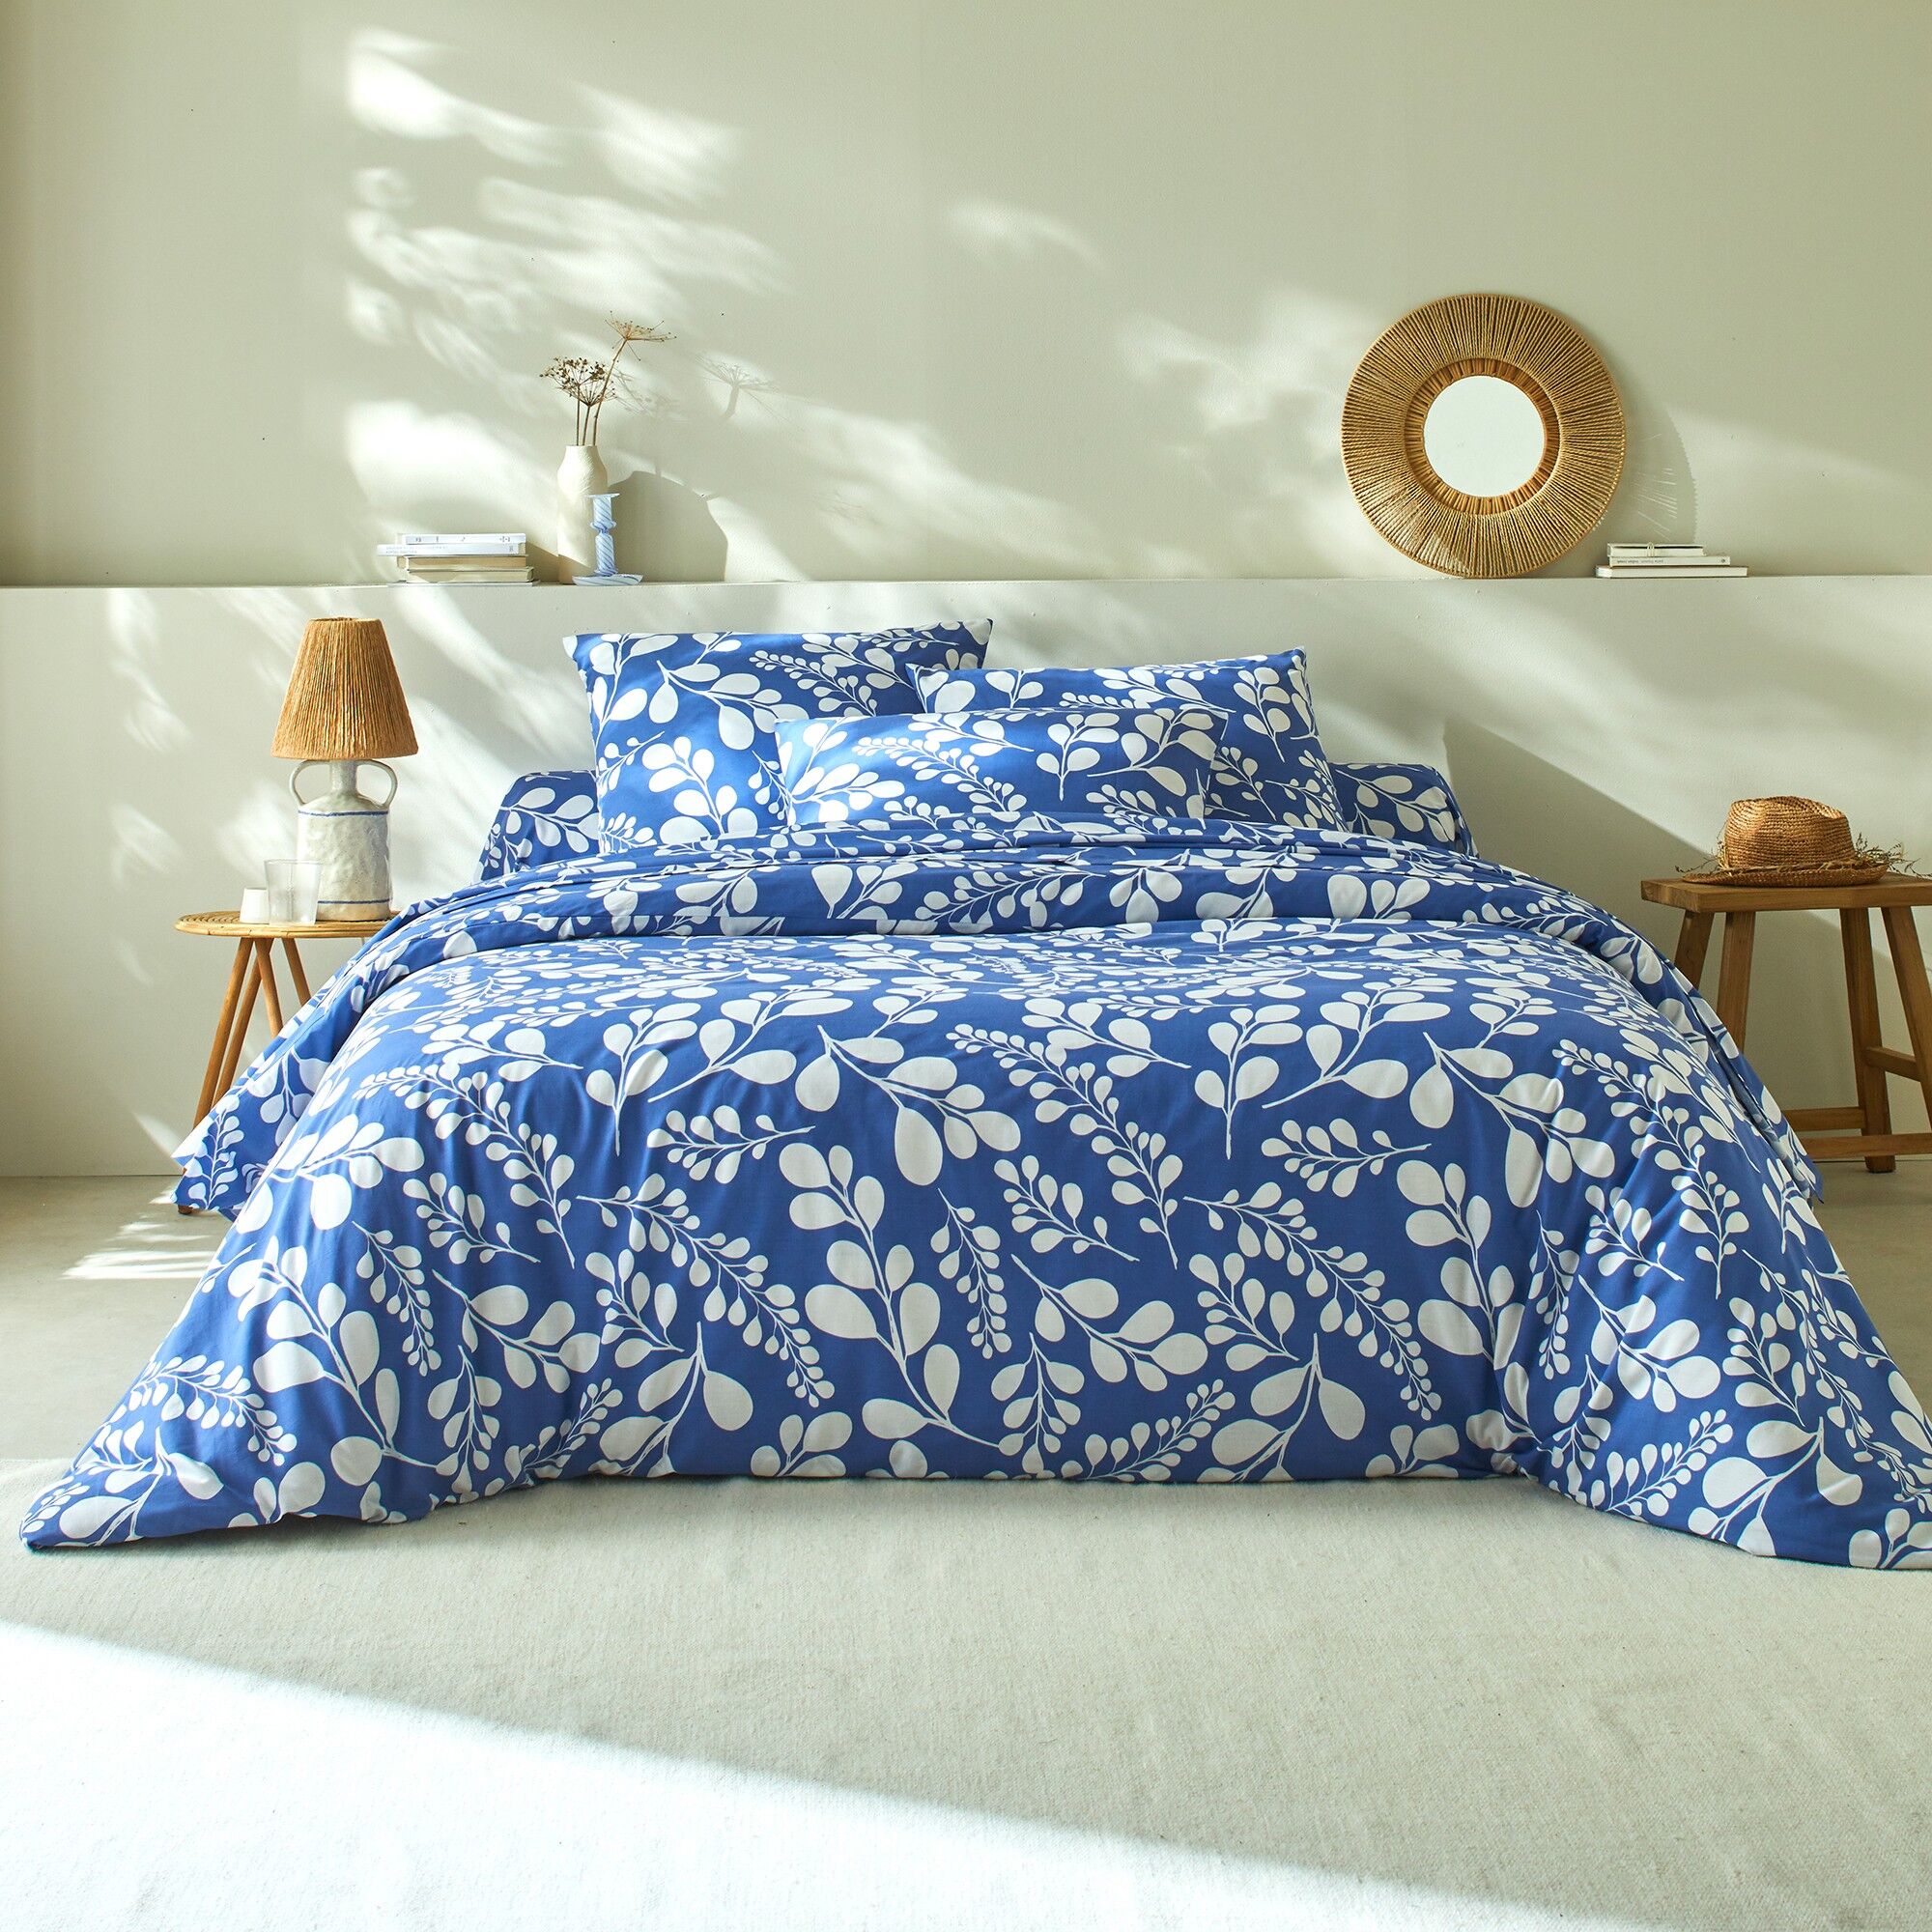 Linge de lit Chloé bicolore imprimé feuillage - en coton - Blancheporte Bleu Taie d'oreiller forme sac : 63x63cm